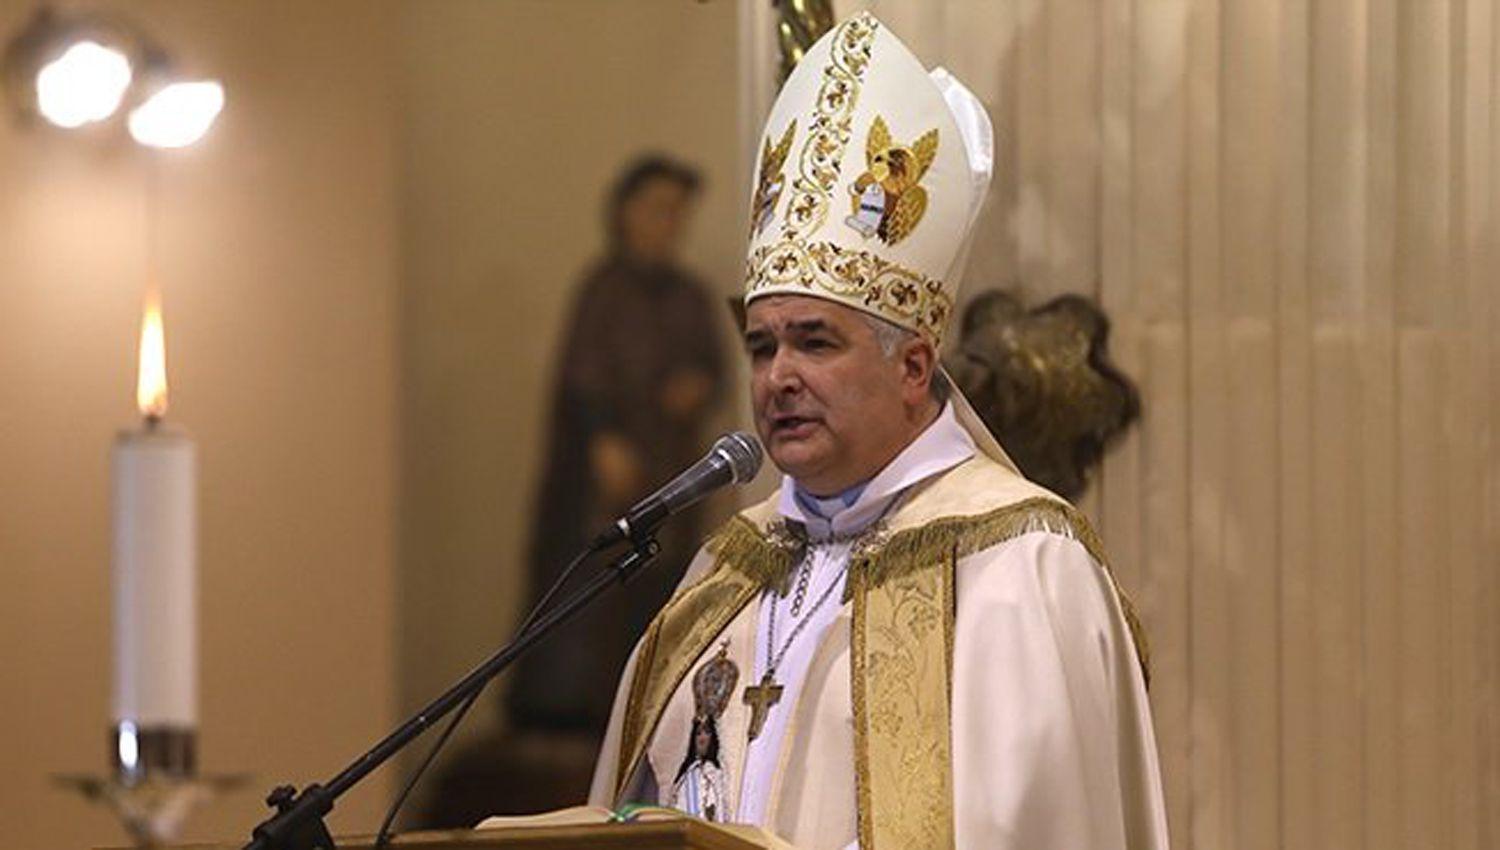 El arzobispo tucumano agradecioacute la entrega de quienes en la pandemia han puesto todo de siacute